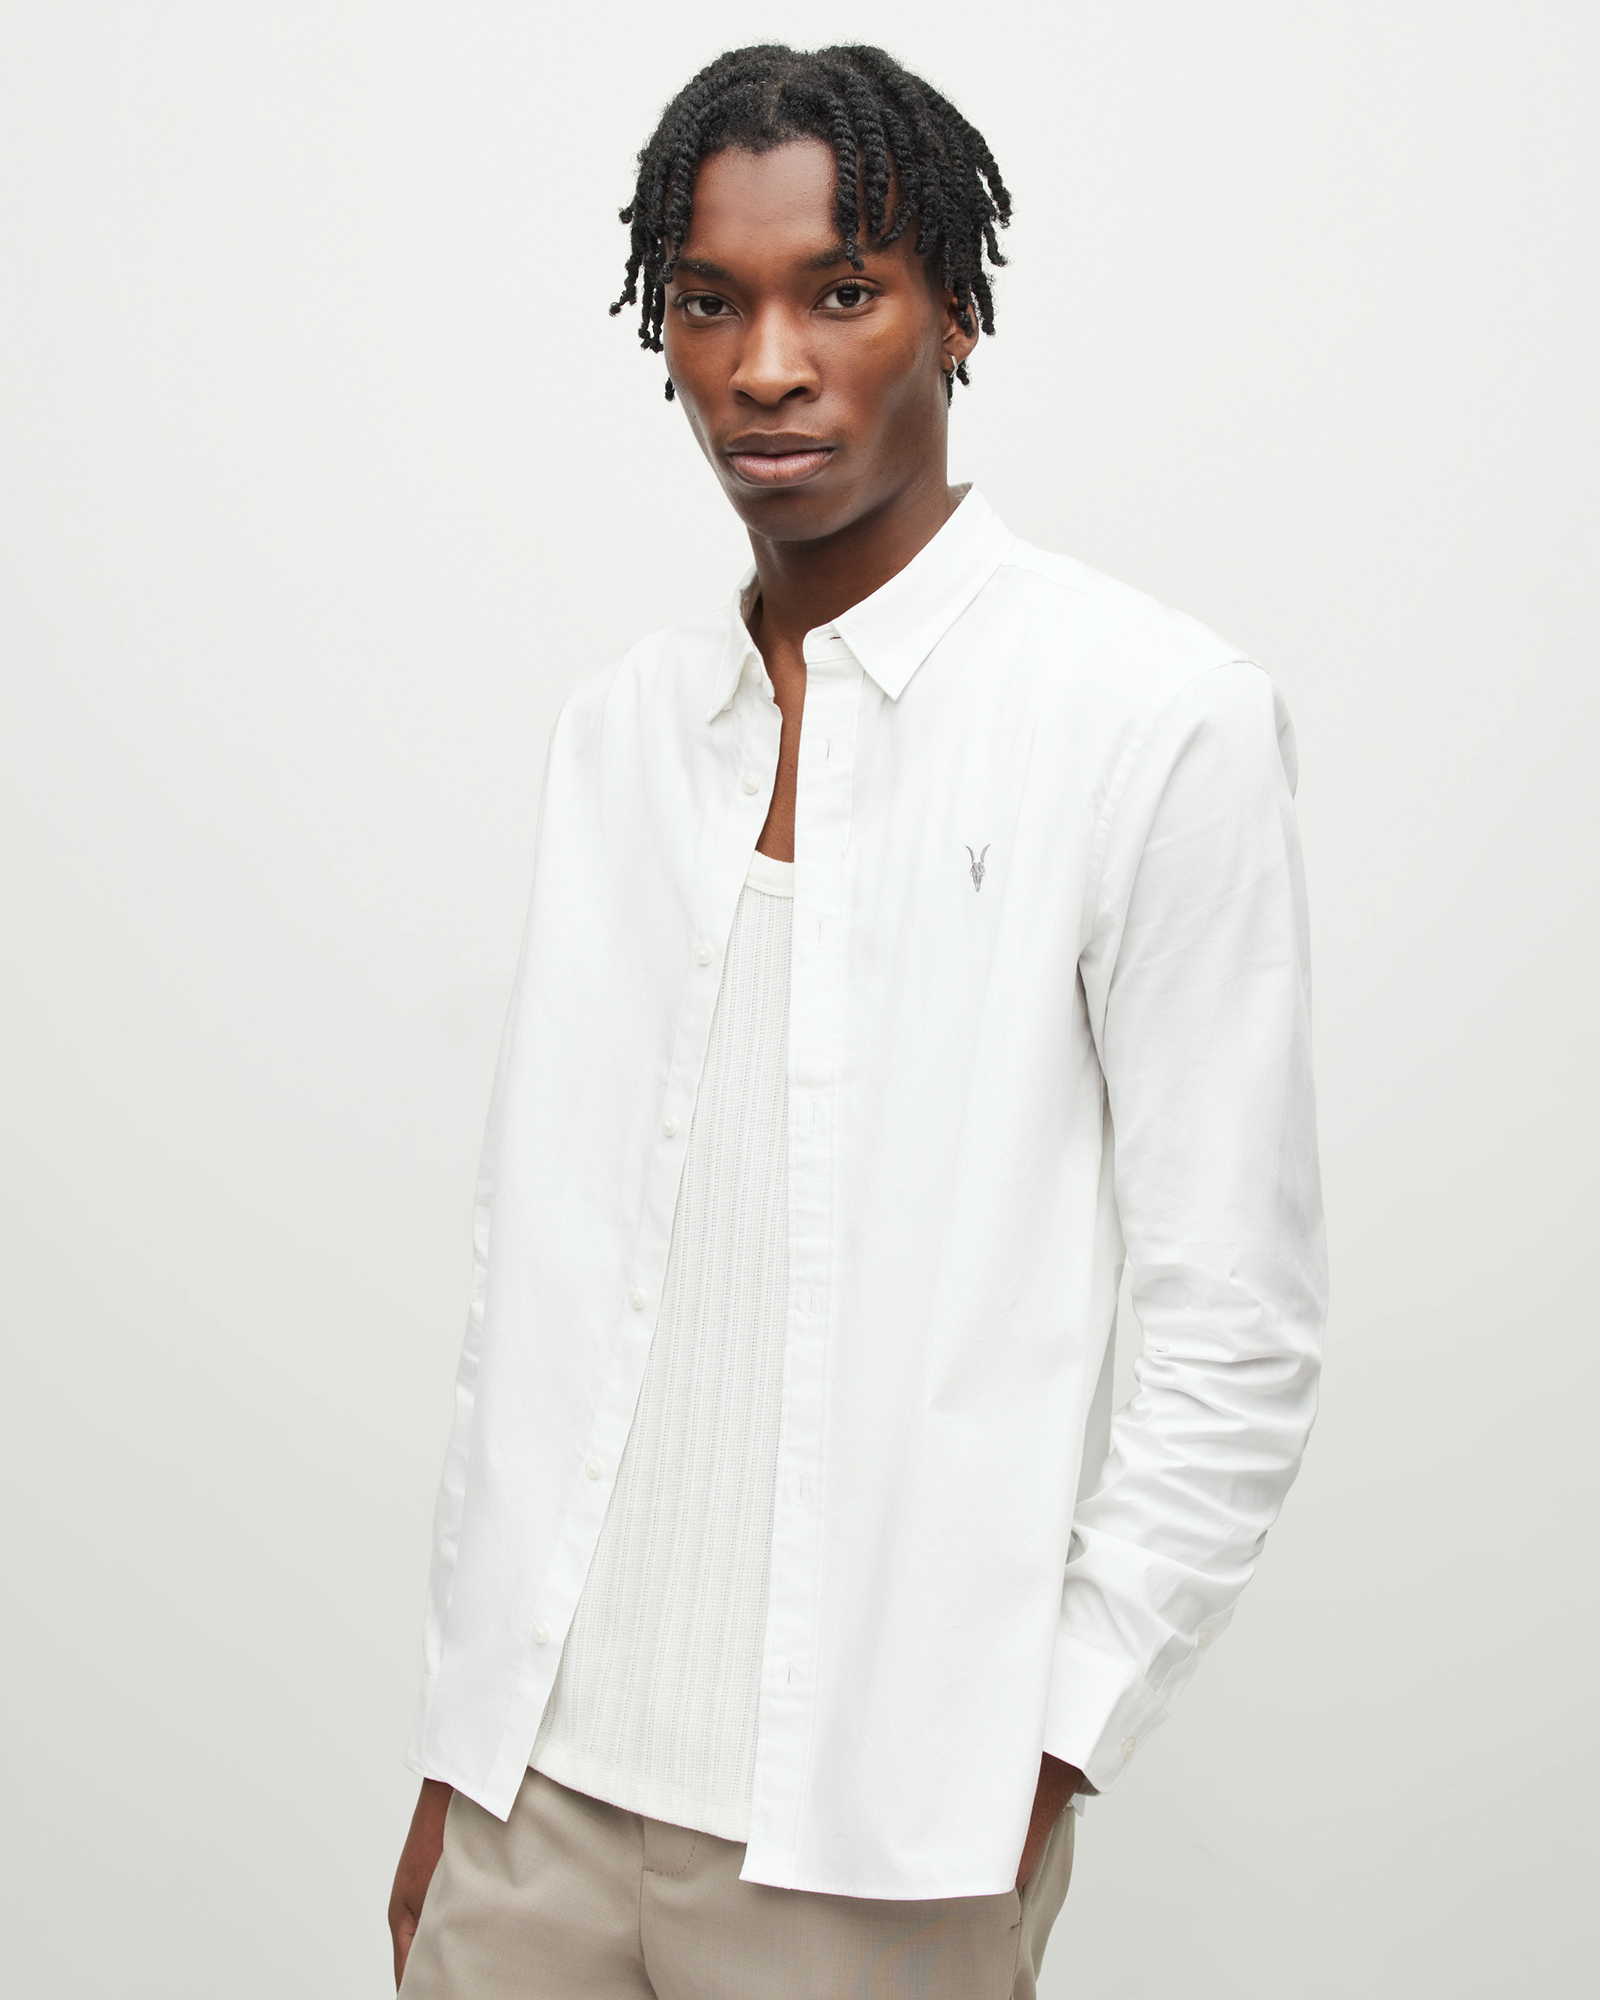 AllSaints Men's Cotton Slim Fit Hawthorne Stretch Shirt, White, Size: M